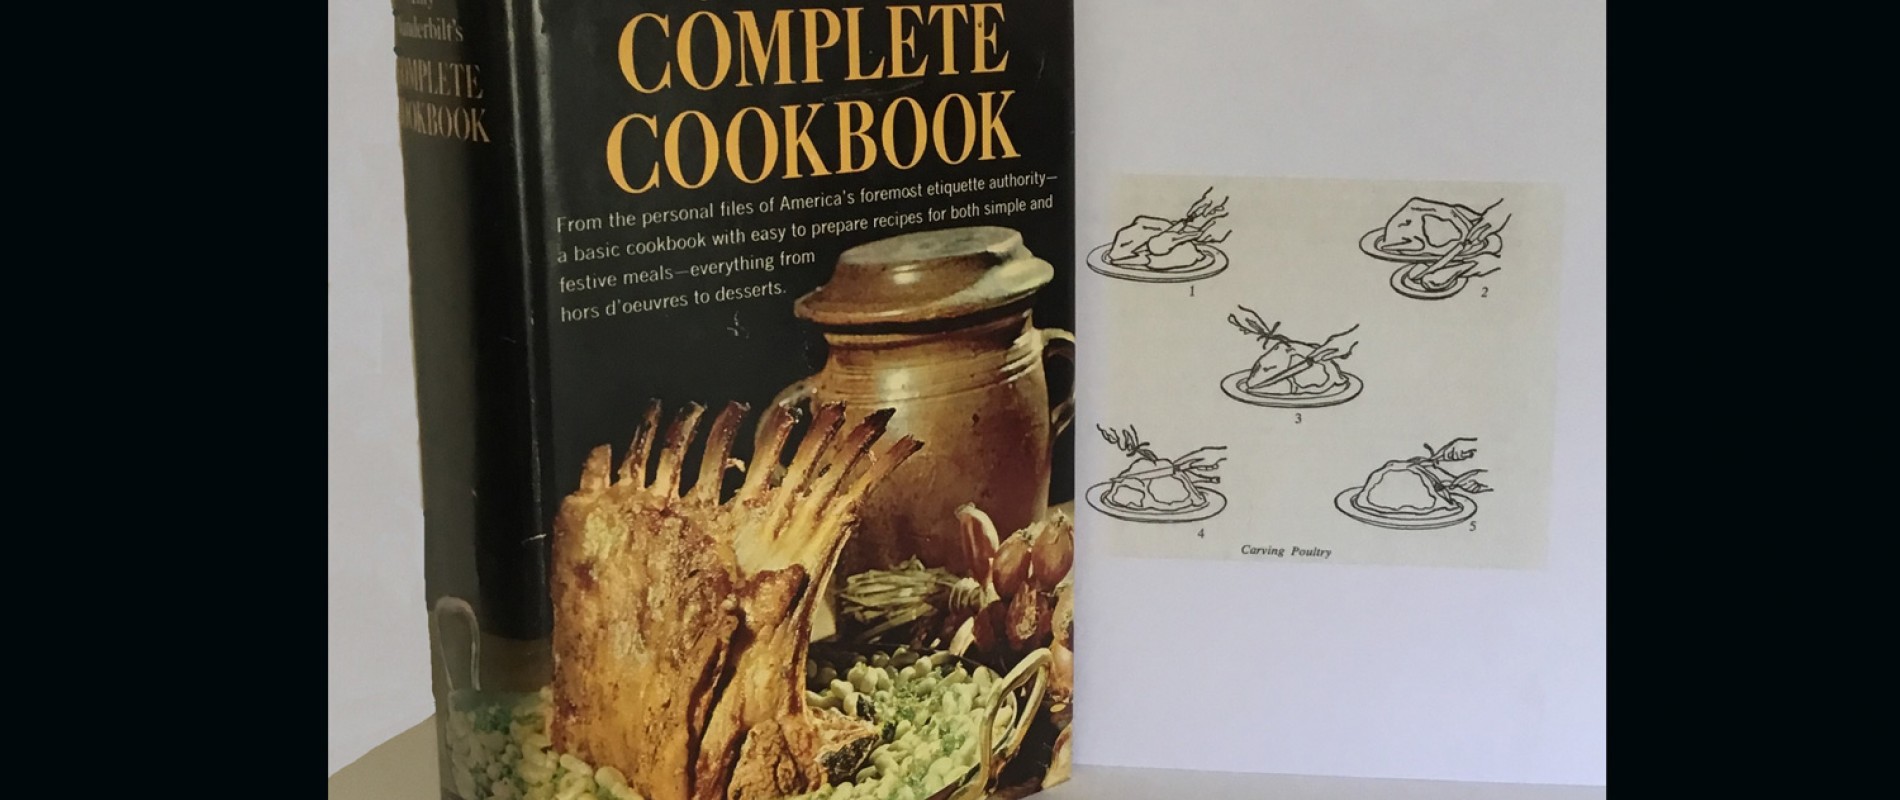 Amy Vanderbilt’s Complete Cookbook. Drawings by Andrew Warhol, Doubleday & Company, Inc., Garden City, New York 1961. L’illustrazione, intitolata Carving poultry, è riprodotta a p. 475. (Collezione Guido Andrea Pautasso)